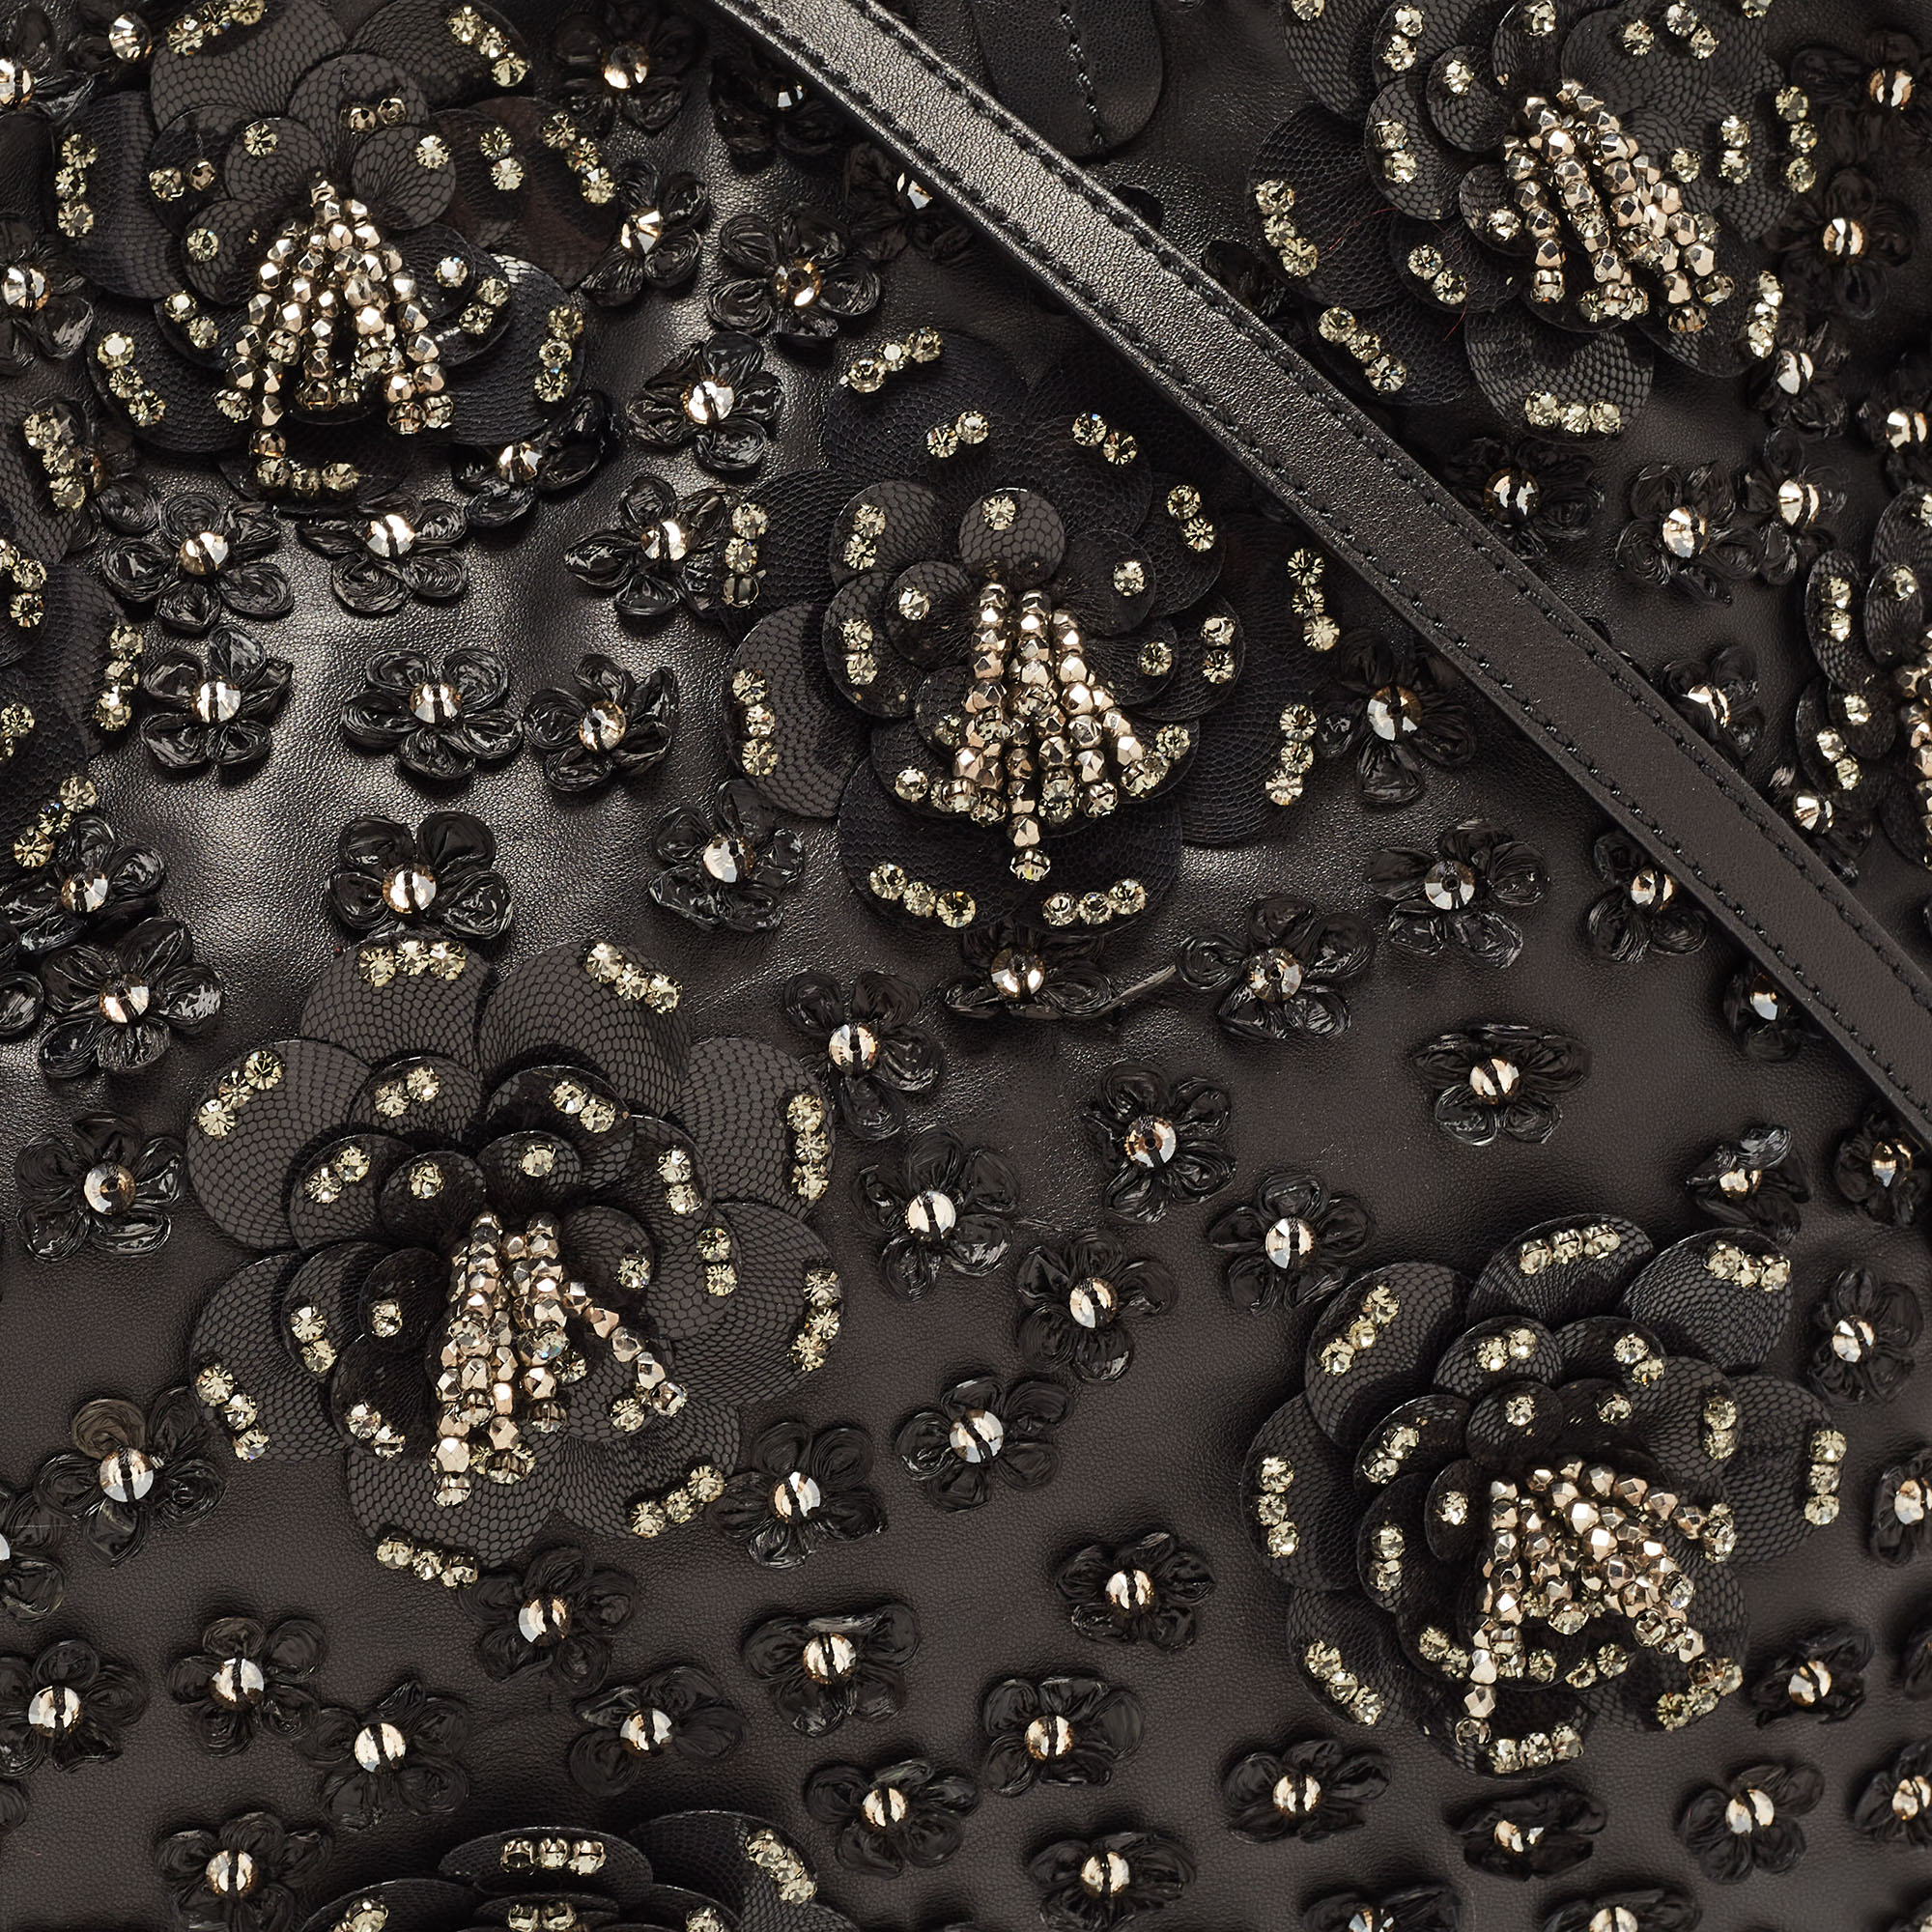 Valentino Black Leather Crystal Embellished Floral Applique Tote